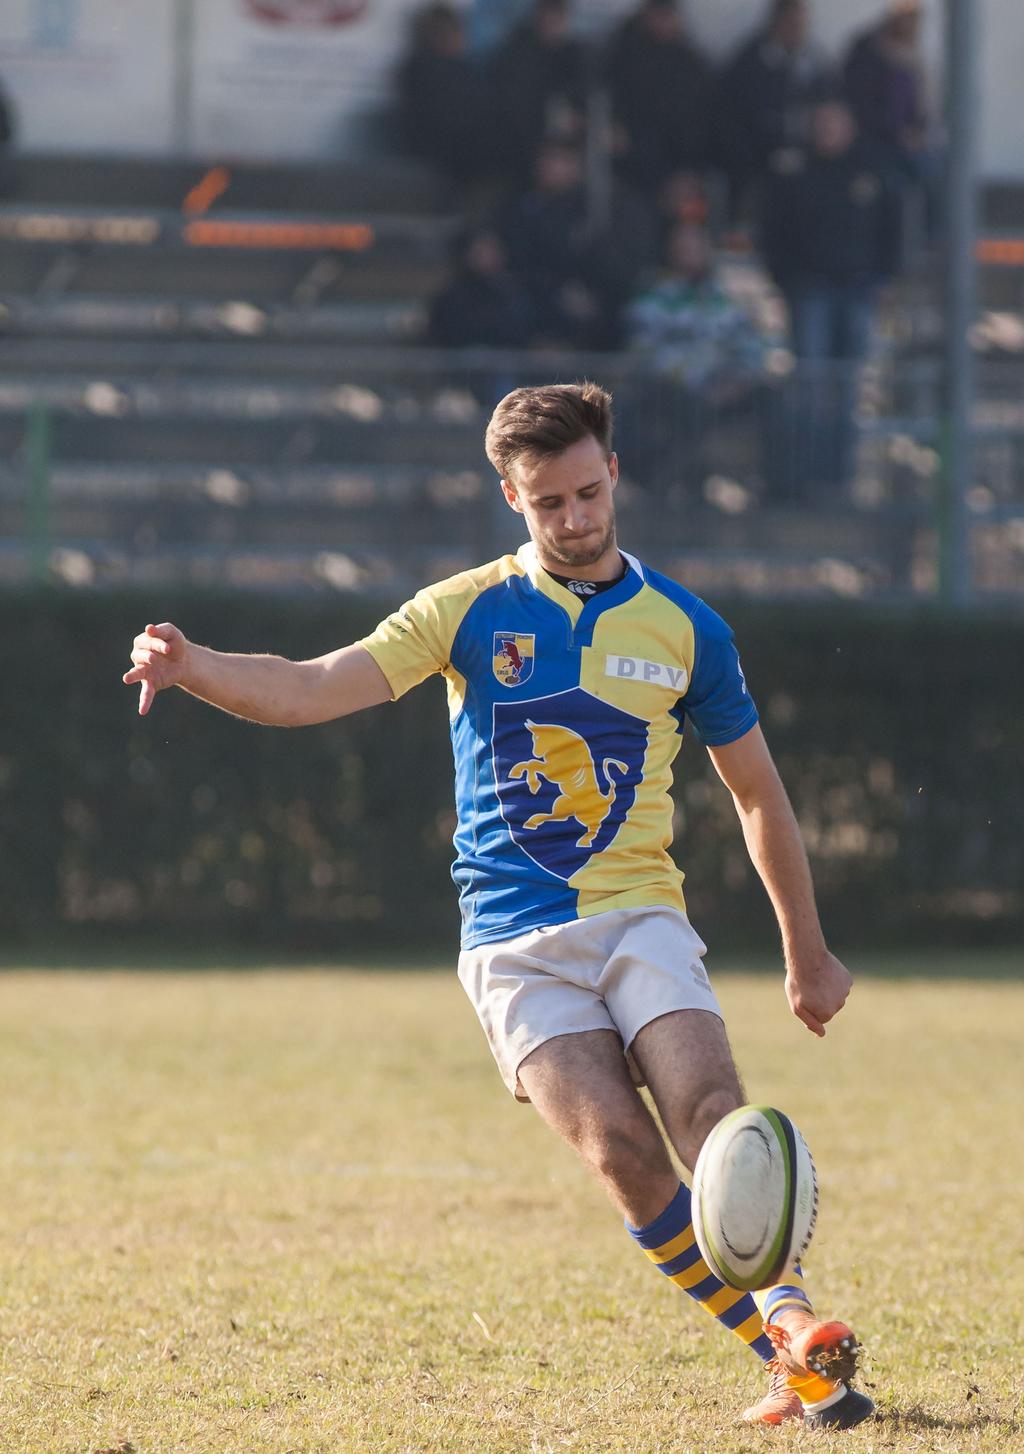 Periodico a cura del VII Rugby Torino. 23 dicembre 2015 Il 2015 passa in archivio con il doppio successo di Senior e Under 18.